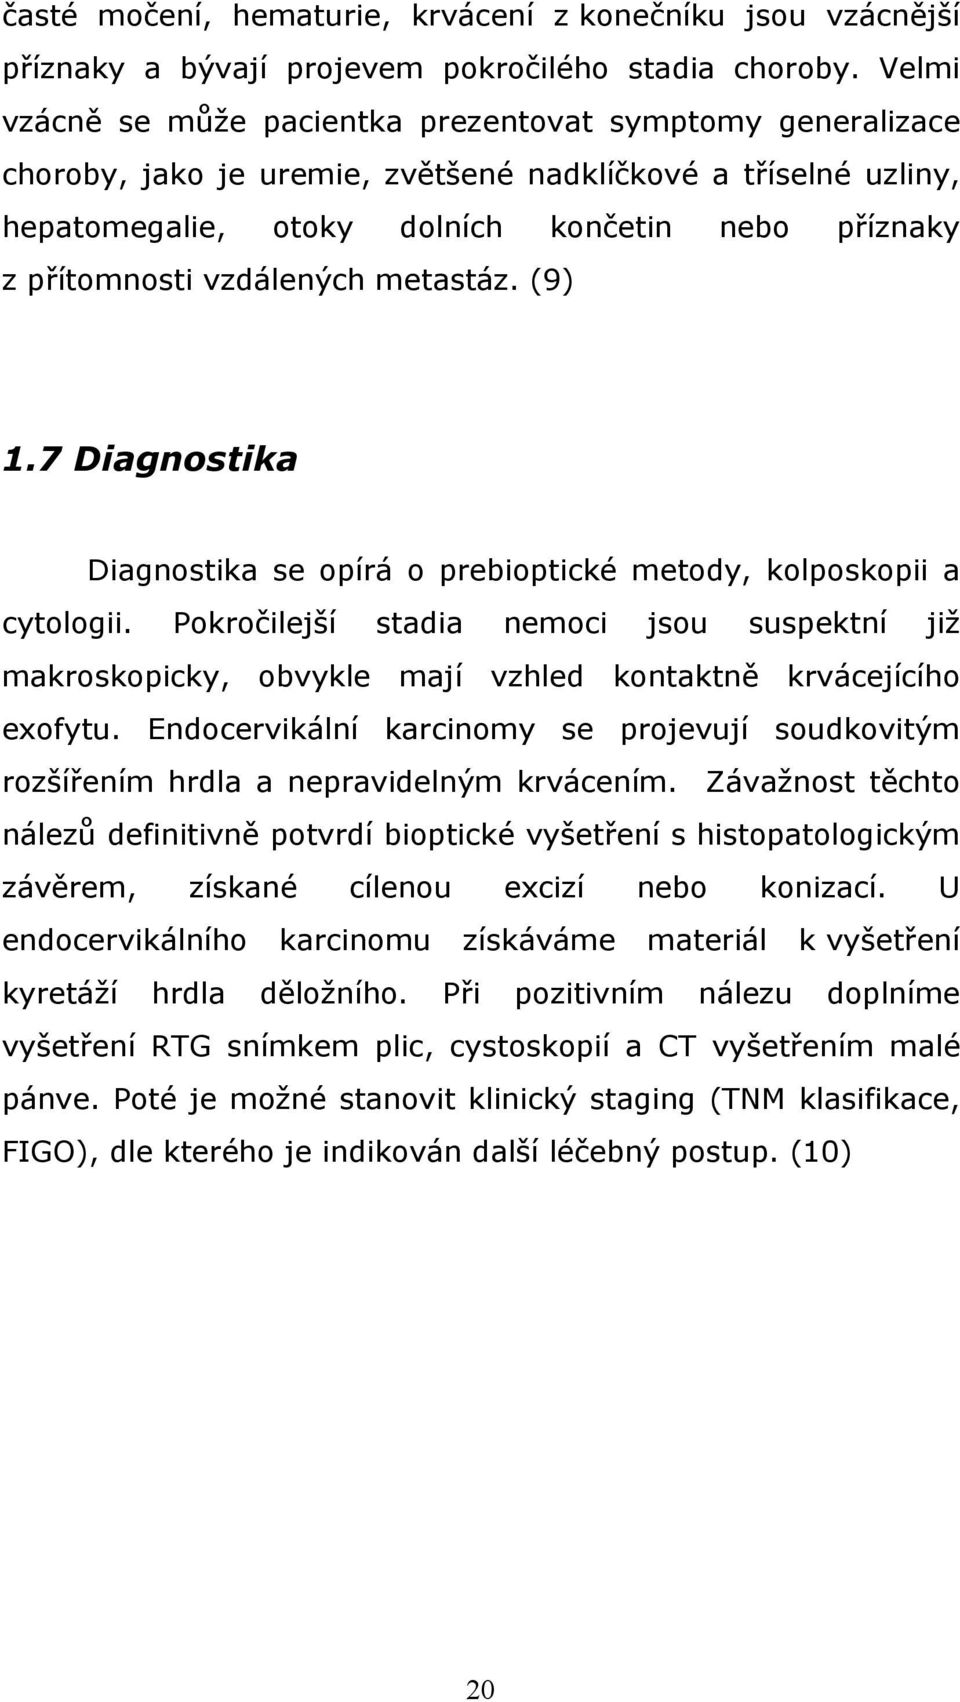 vzdálených metastáz. (9) 1.7 Diagnostika Diagnostika se opírá o prebioptické metody, kolposkopii a cytologii.